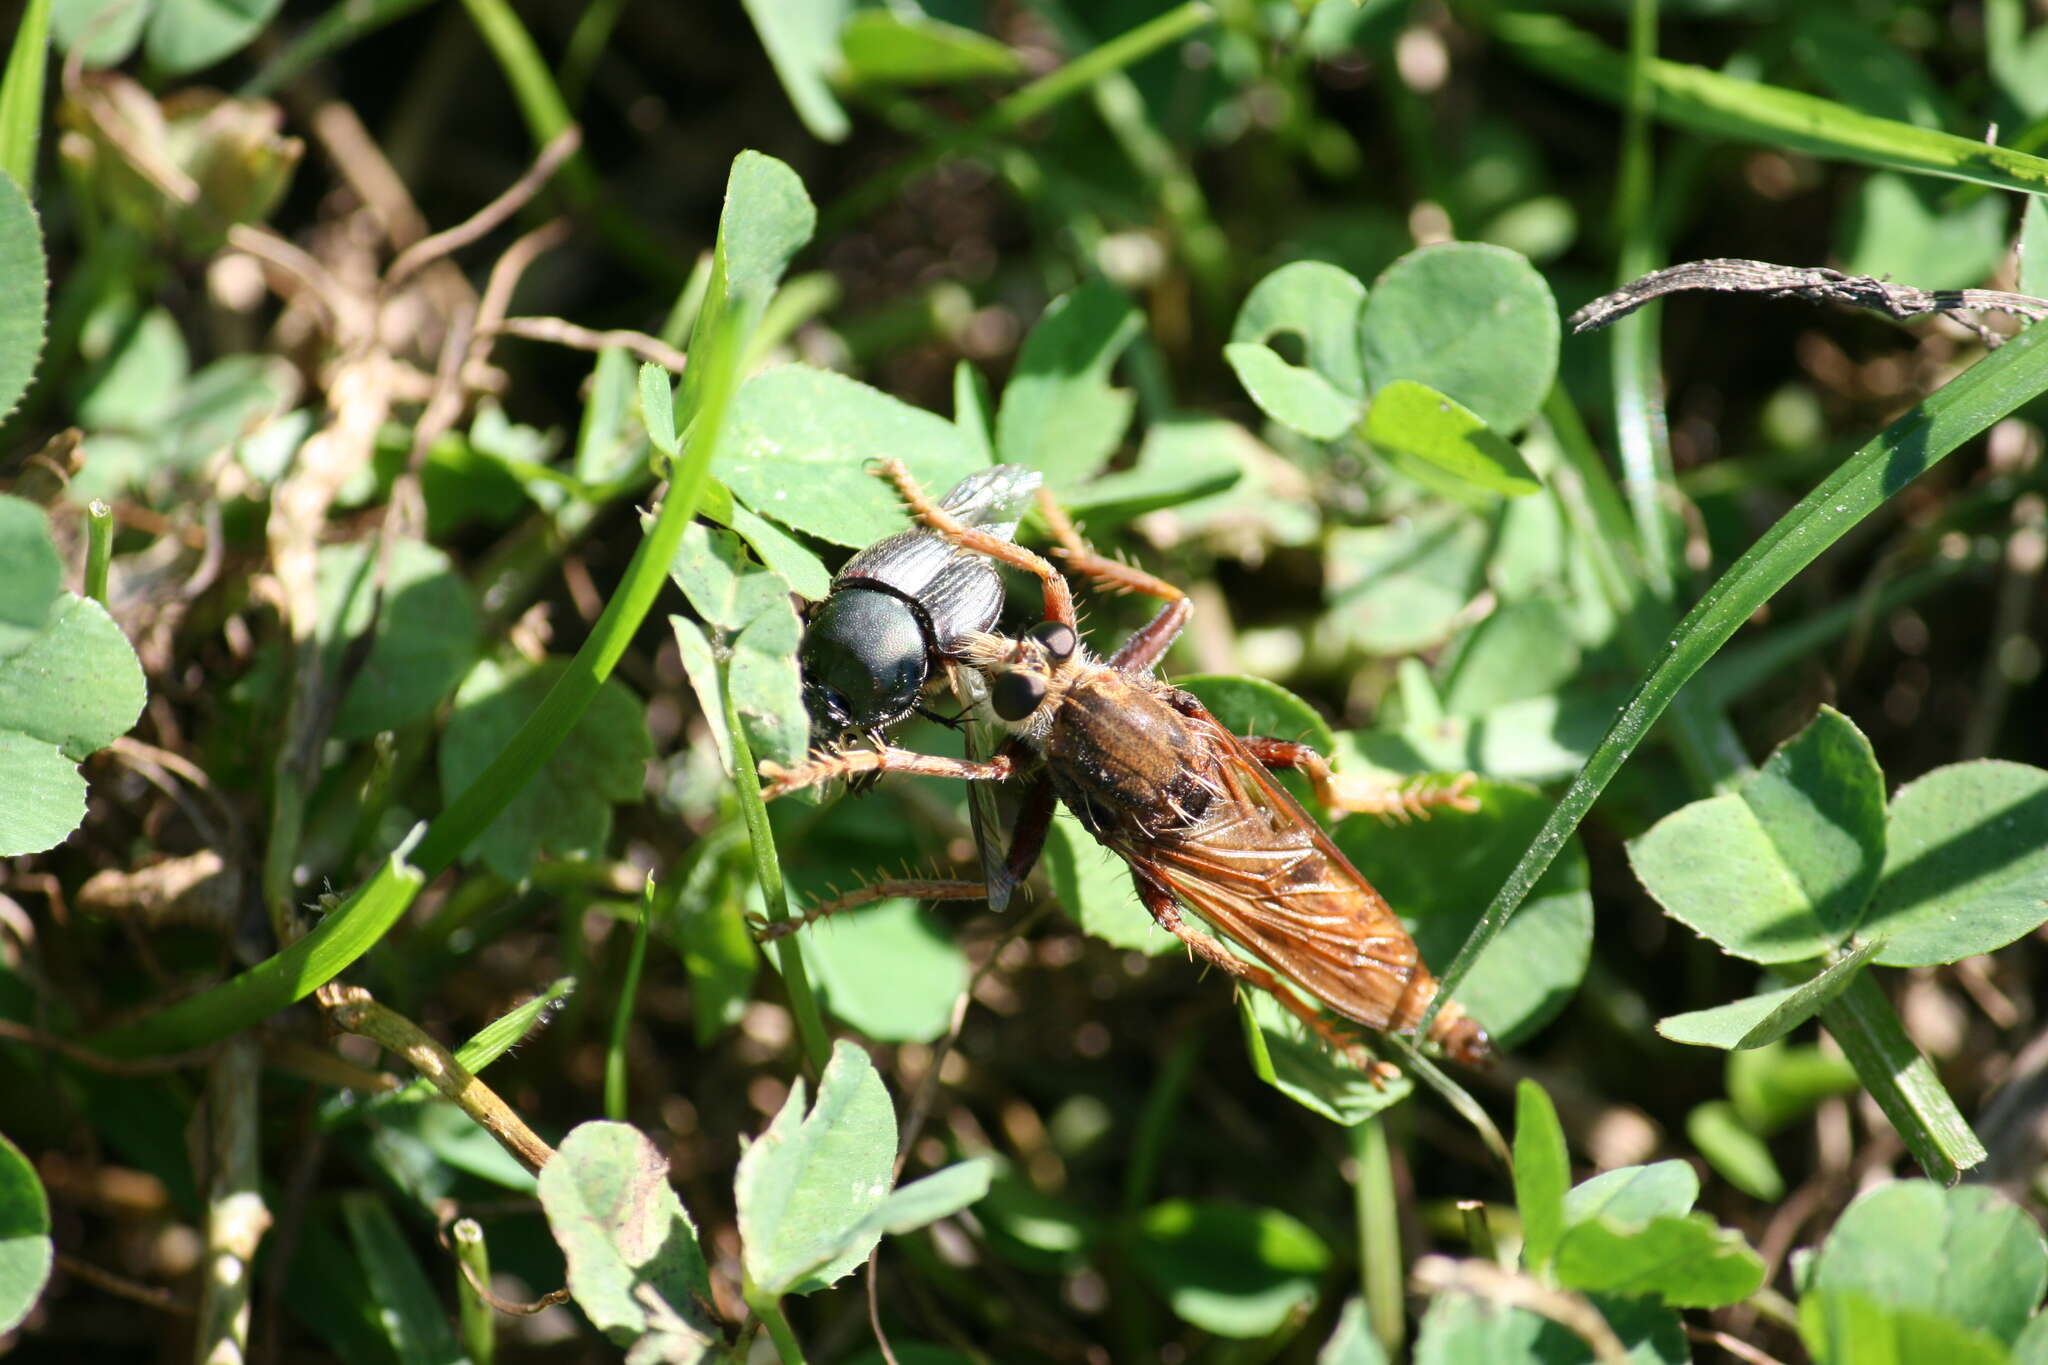 Image of Hornet robberfly